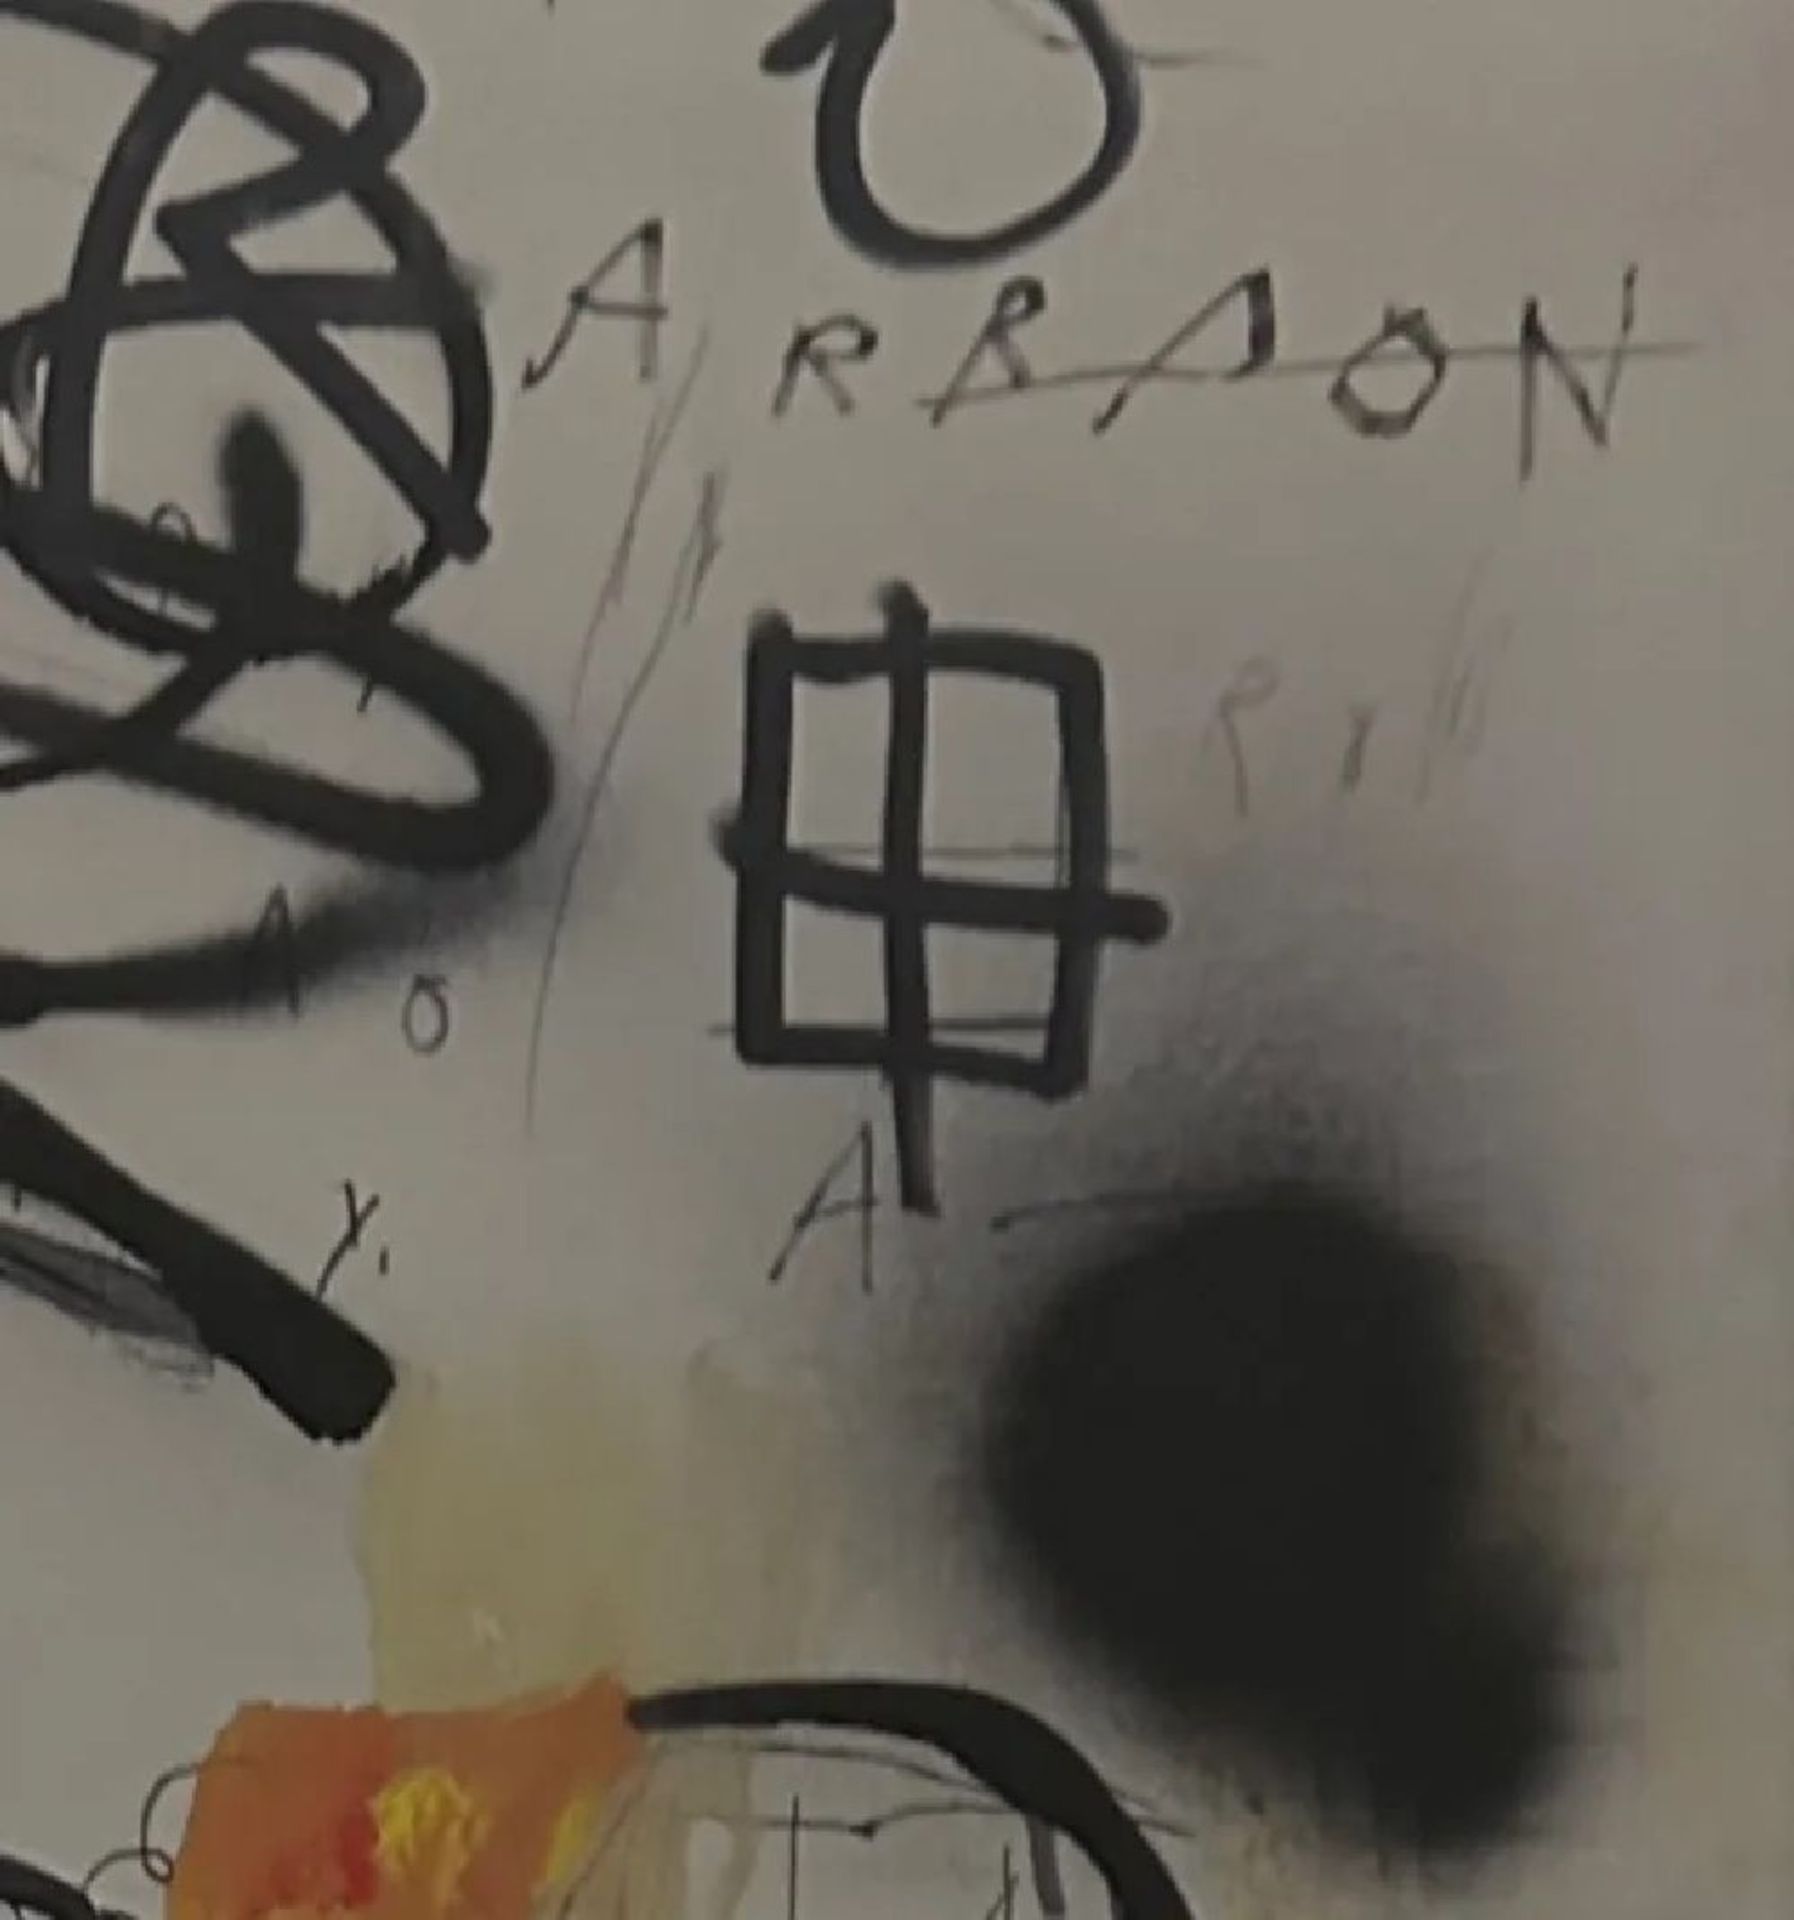 Jean-Michel Basquiat "Untitled" Print - Bild 3 aus 5